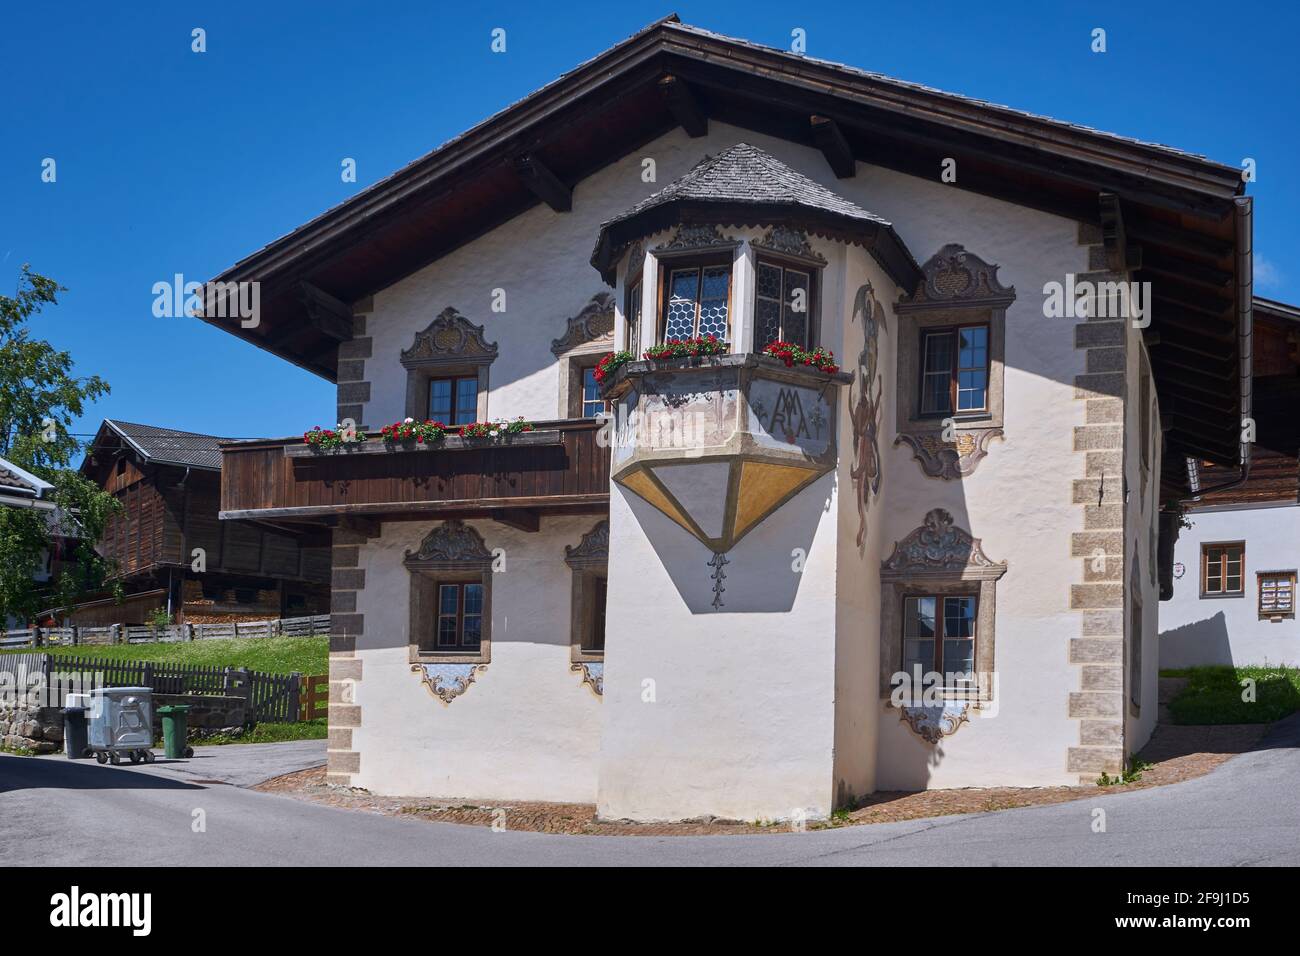 Bauernhaus in Obertilliach, Tiroler Gailtal, Tiroler Lesachtal, Tirol, Österreich Stock Photo